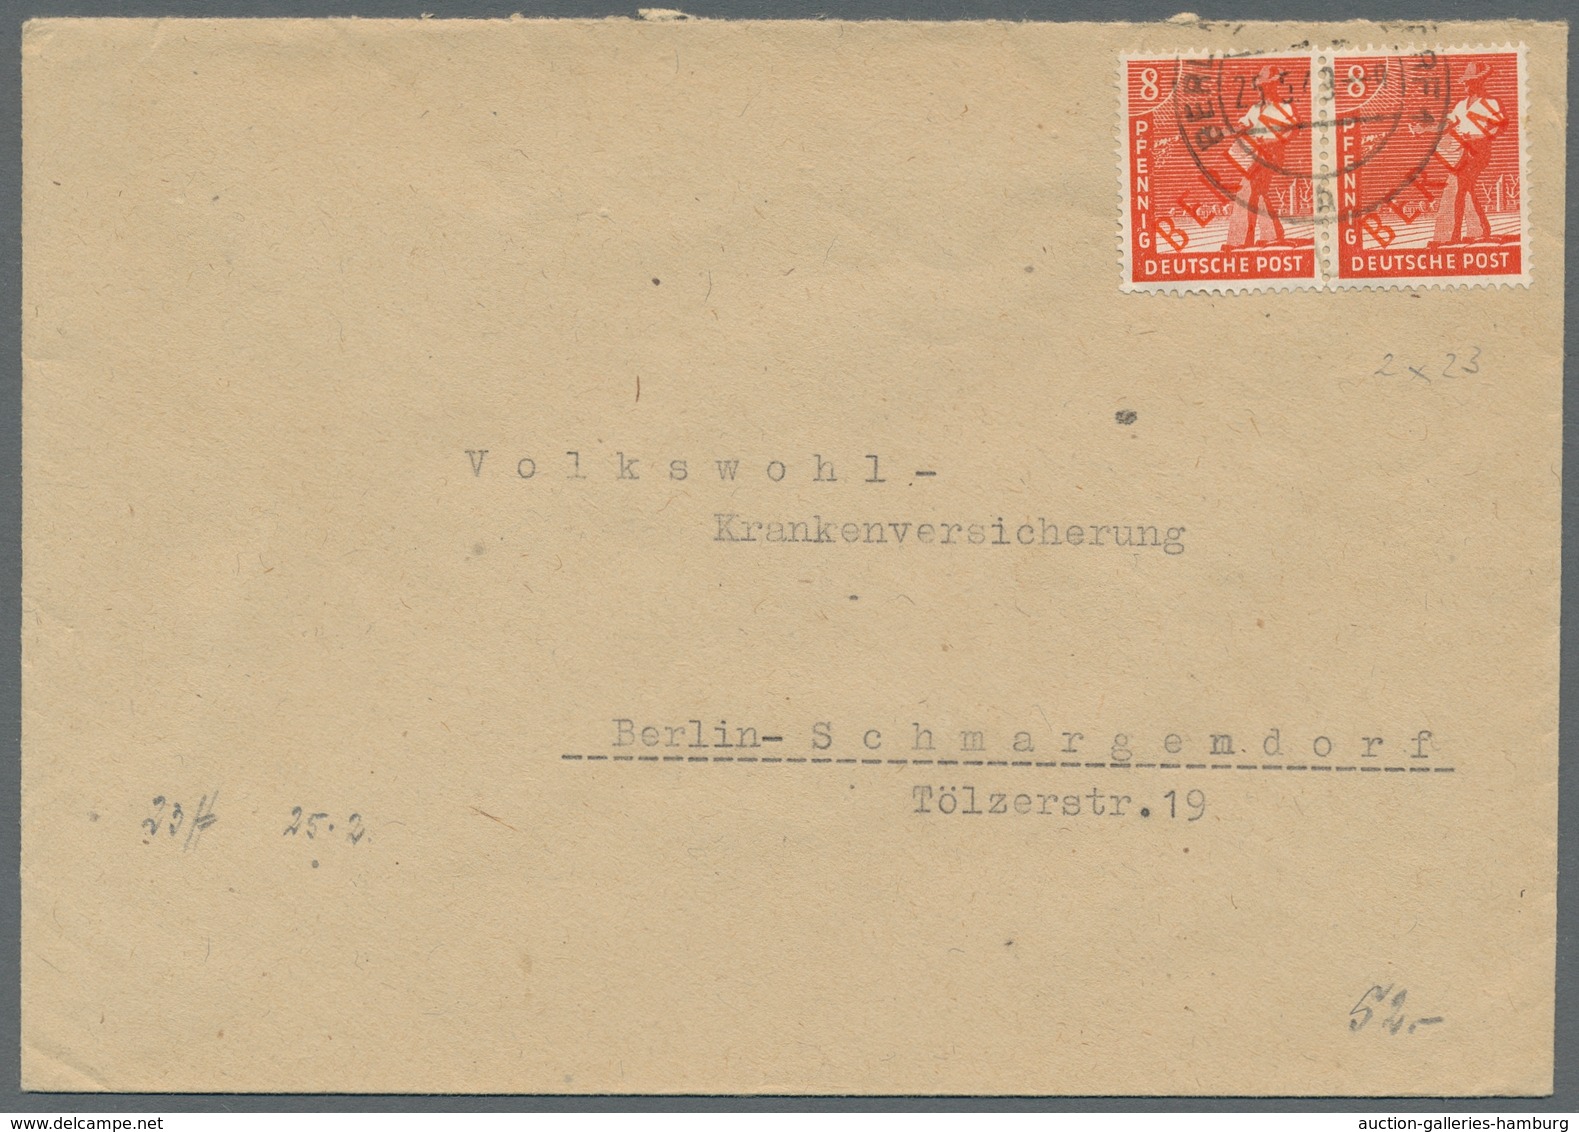 Berlin: 1949, "Rotaufdruck", sechs portorichtige MeF in guter/sehr guter Erhaltung inkl. senkr. Paar